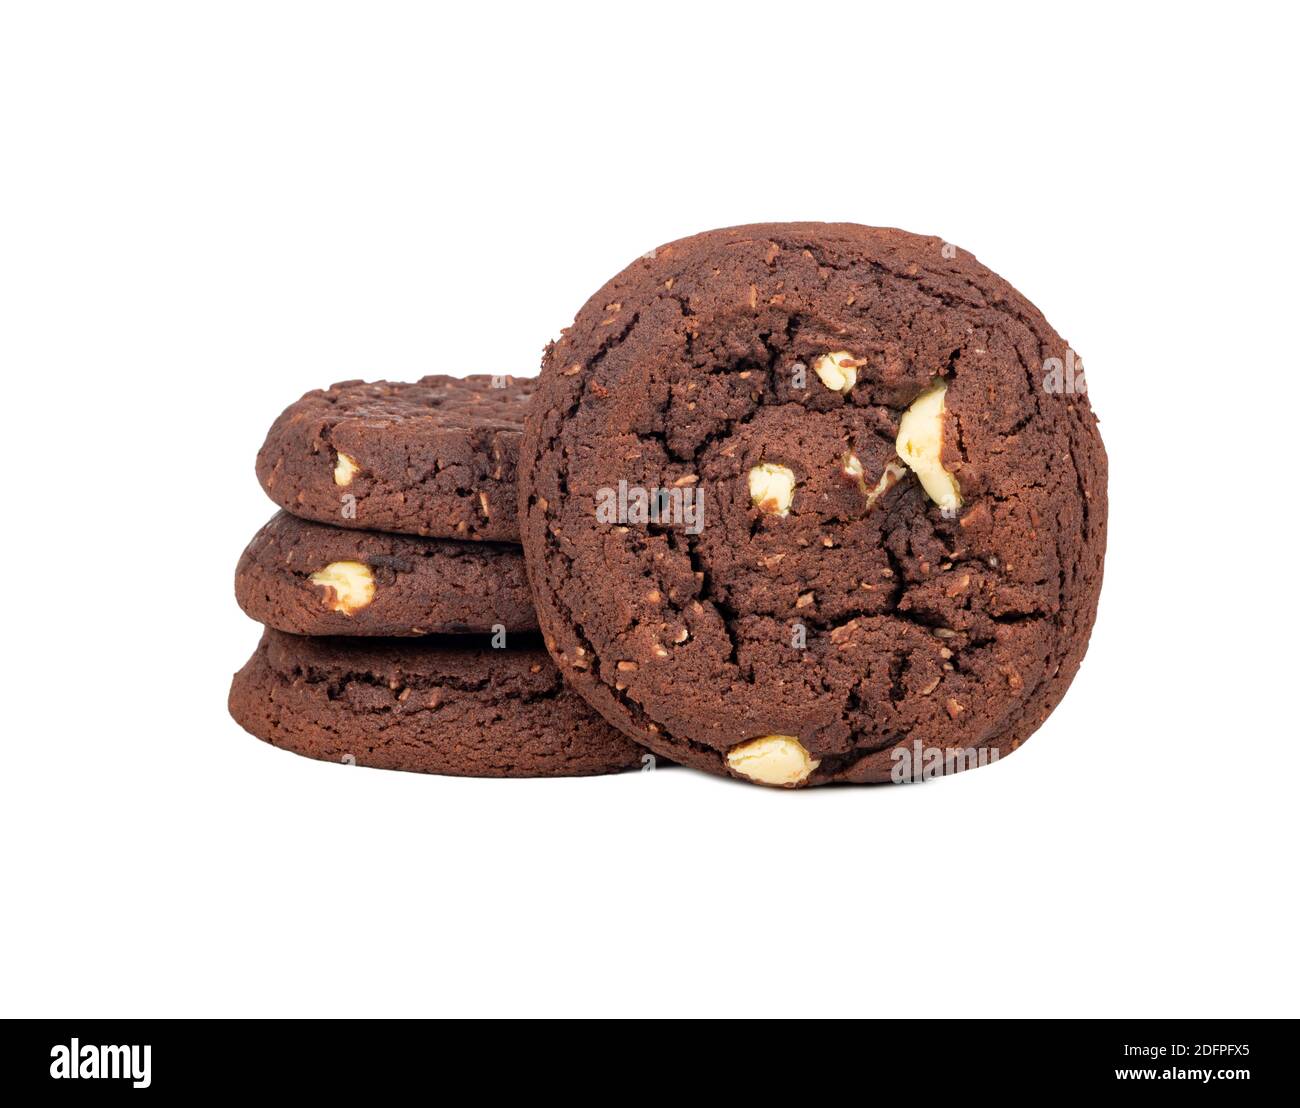 Stapel von Schokoladenkeksen mit Kokosnussscheiben auf einem weißen Hintergrund Stockfoto